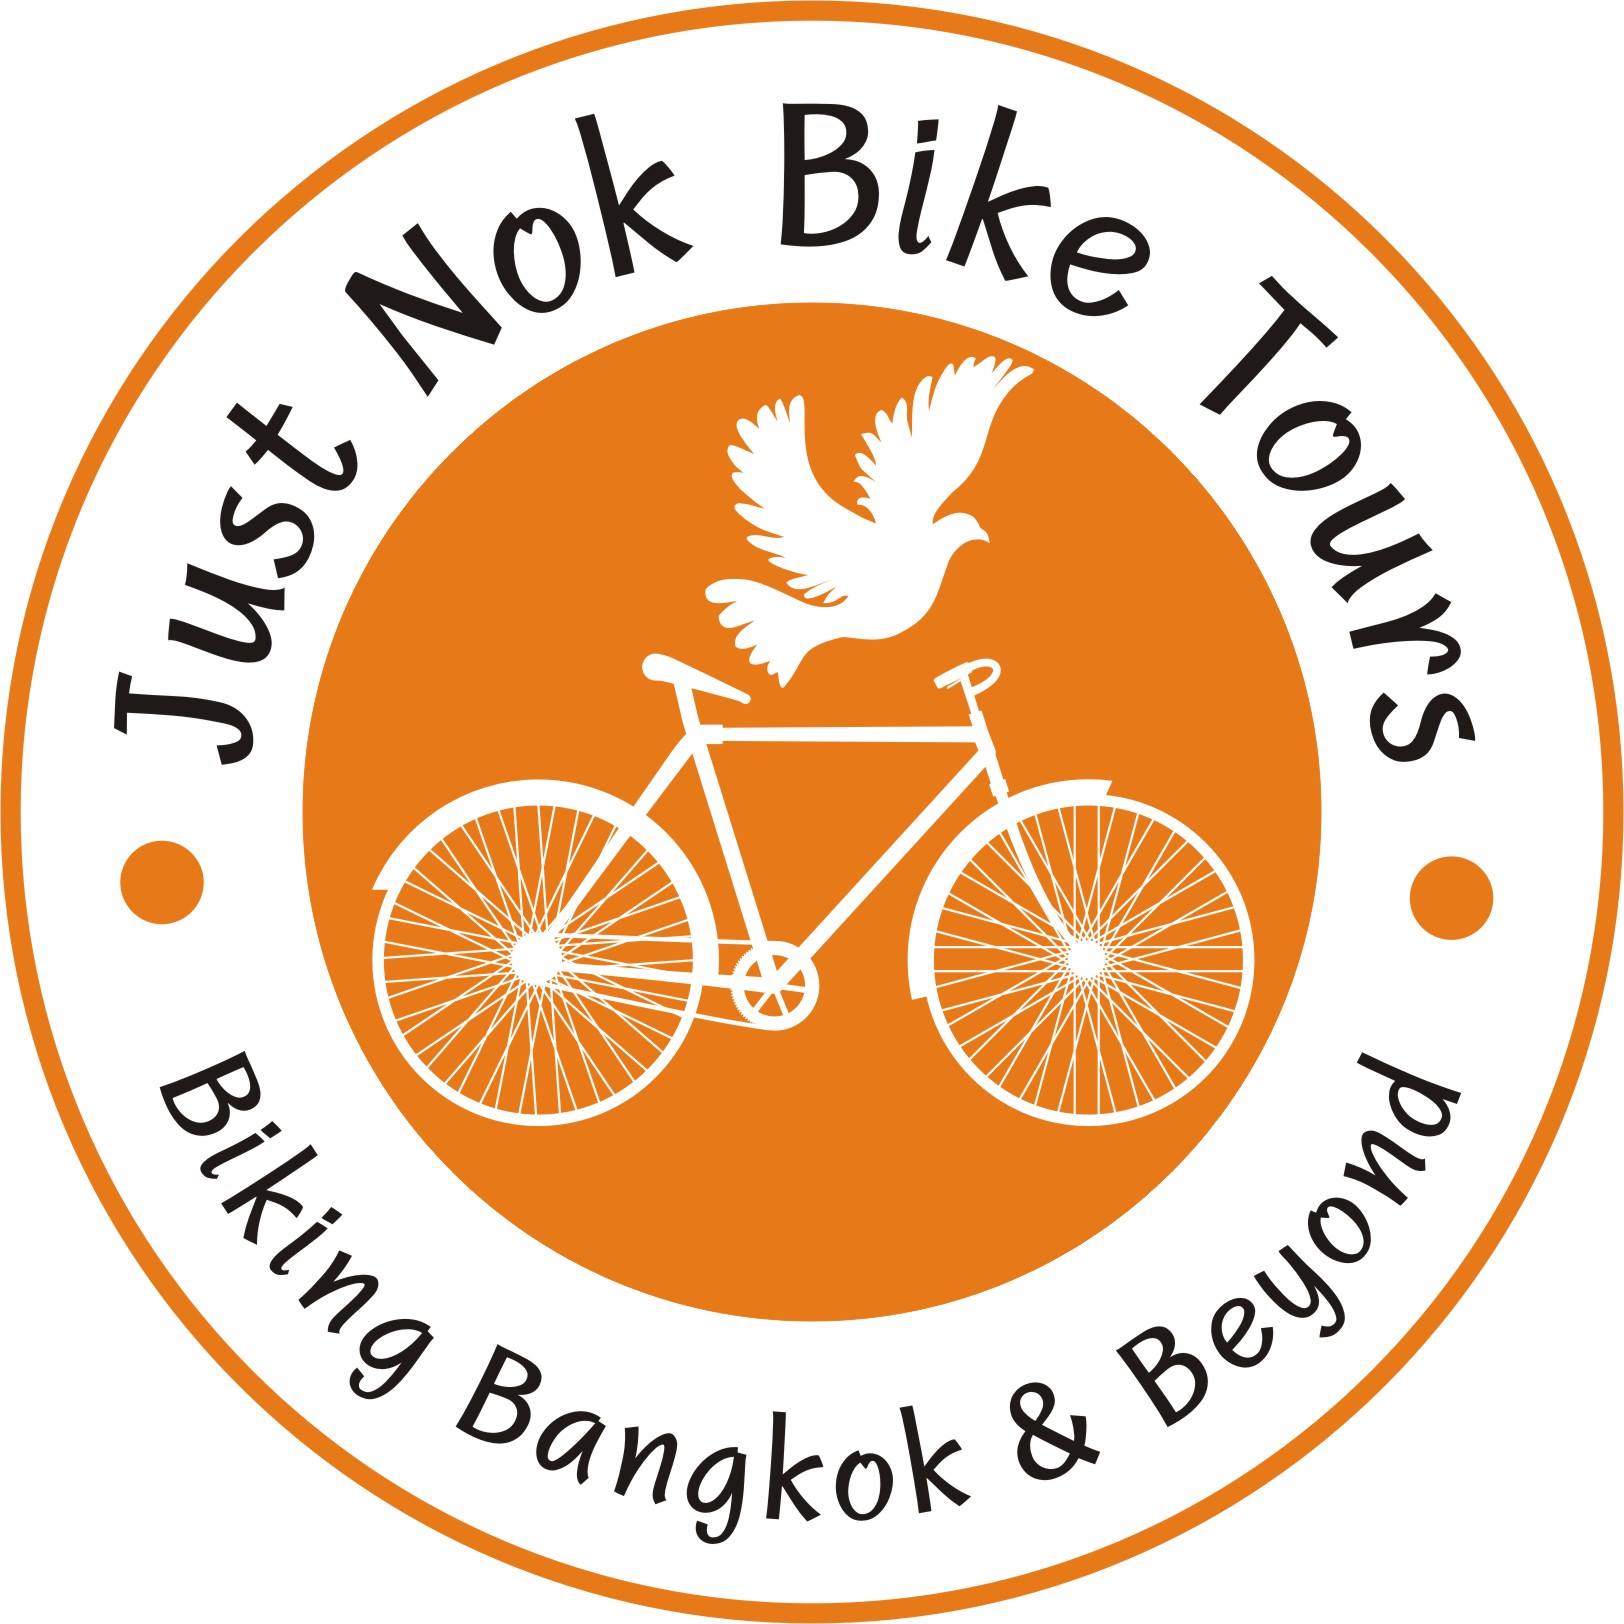 Just bikes. NOK delivery logo. Motorbikes Tour logo.